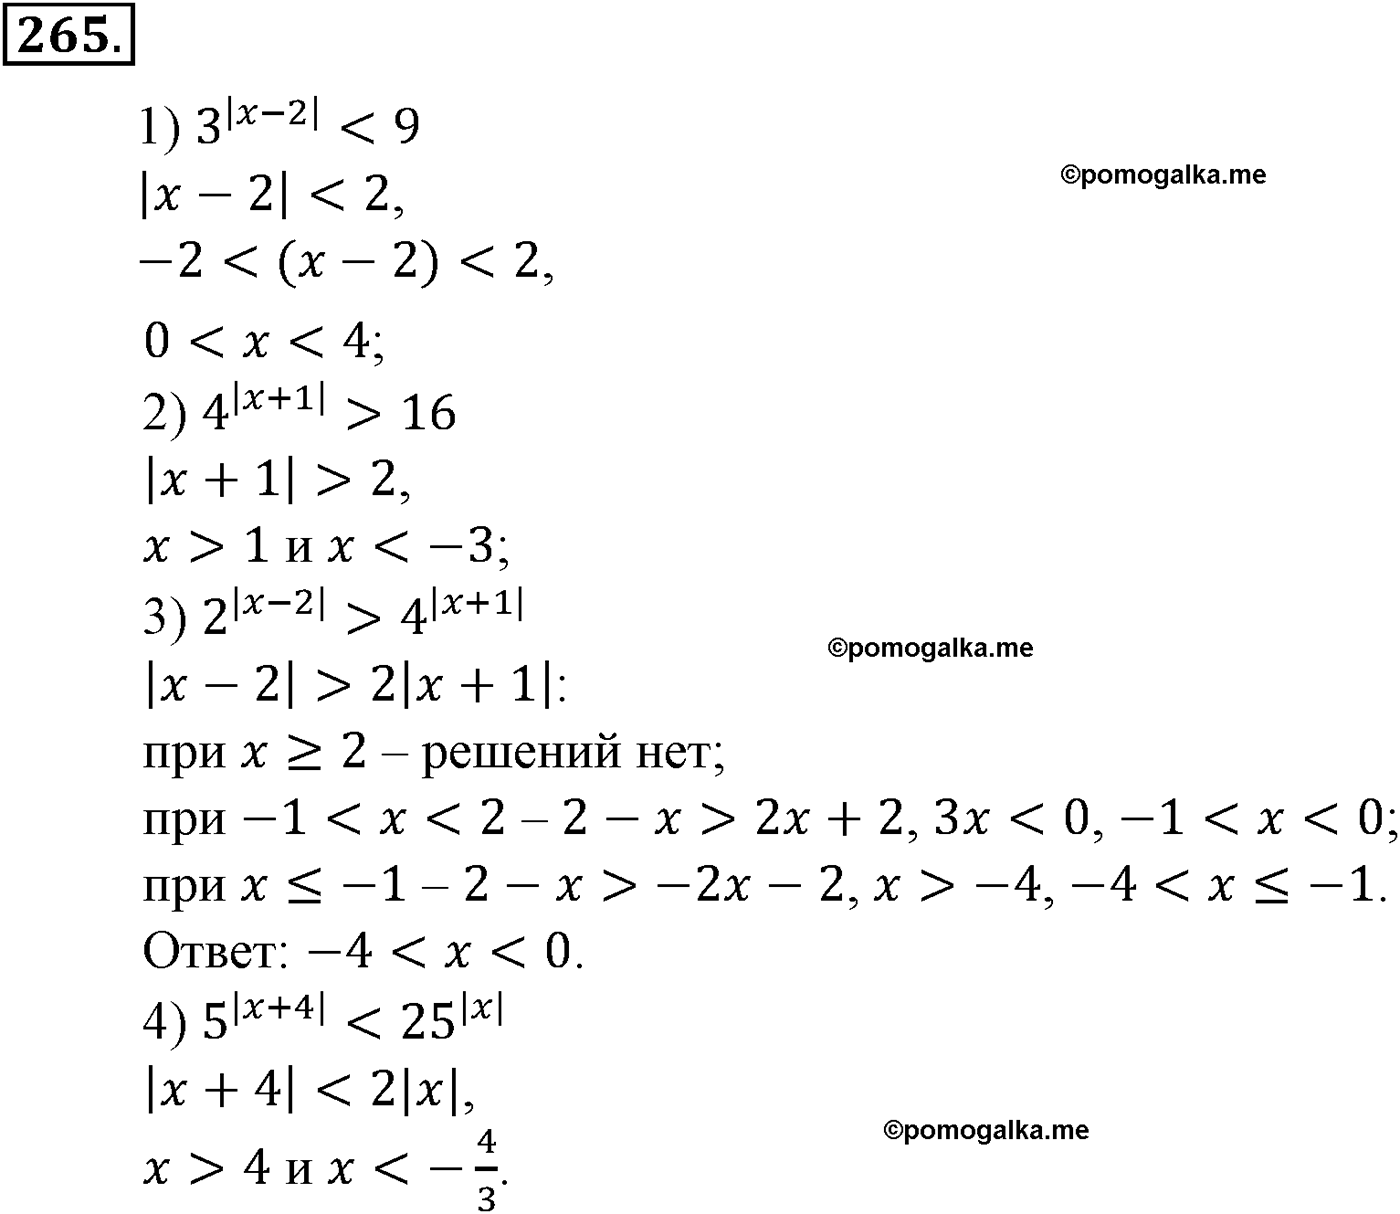 разбор задачи №265 по алгебре за 10-11 класс из учебника Алимова, Колягина